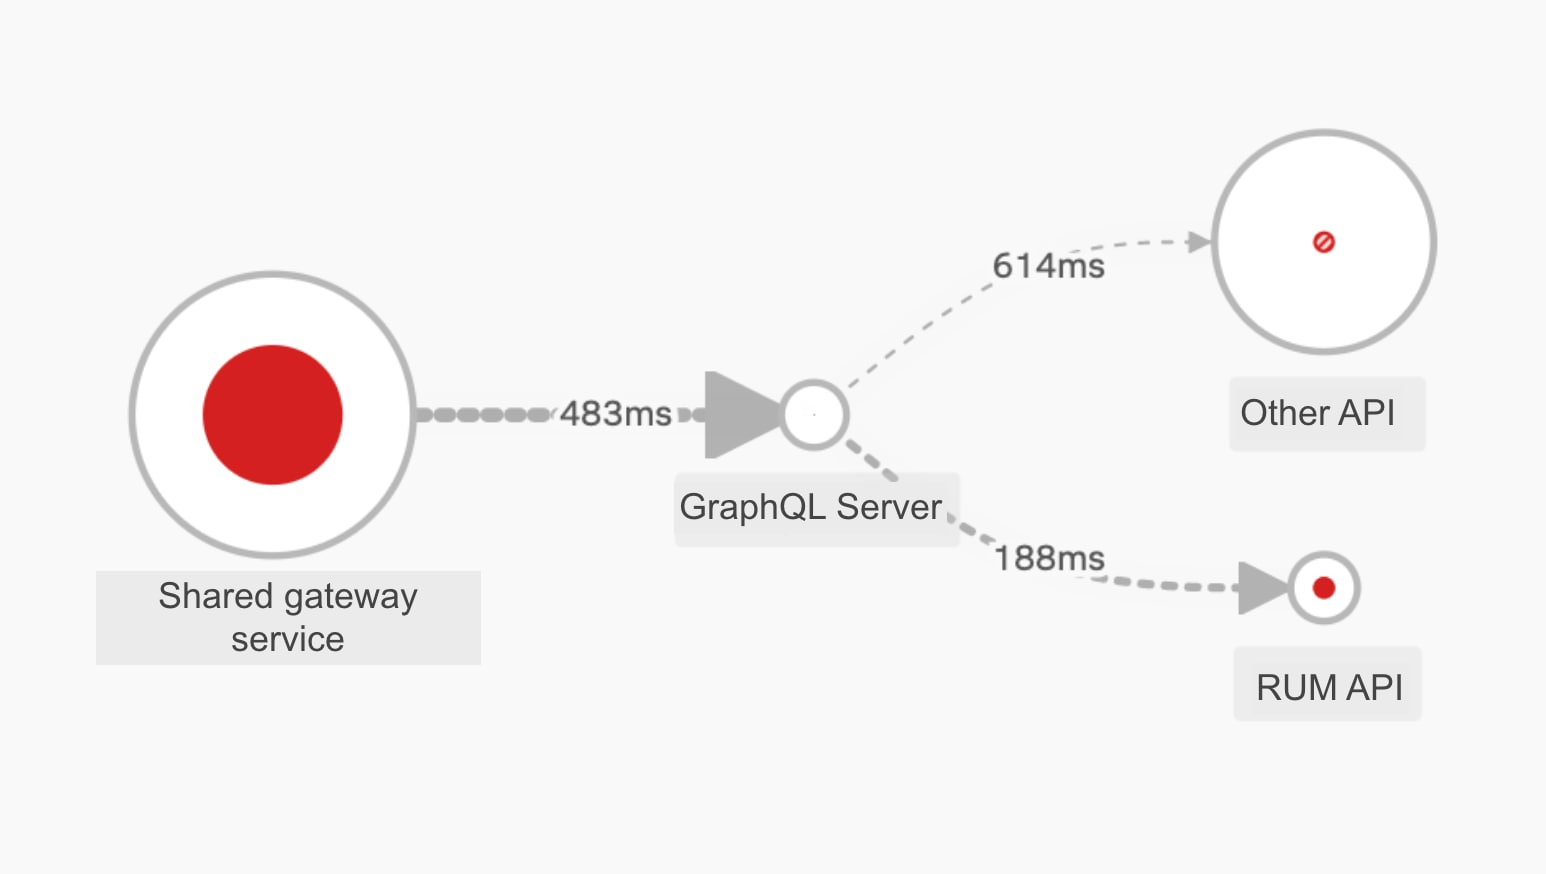 GraphQLサーバーの上流にある共有ゲートウェイサービスのエラーを示すSplunk APMの依存関係マップ